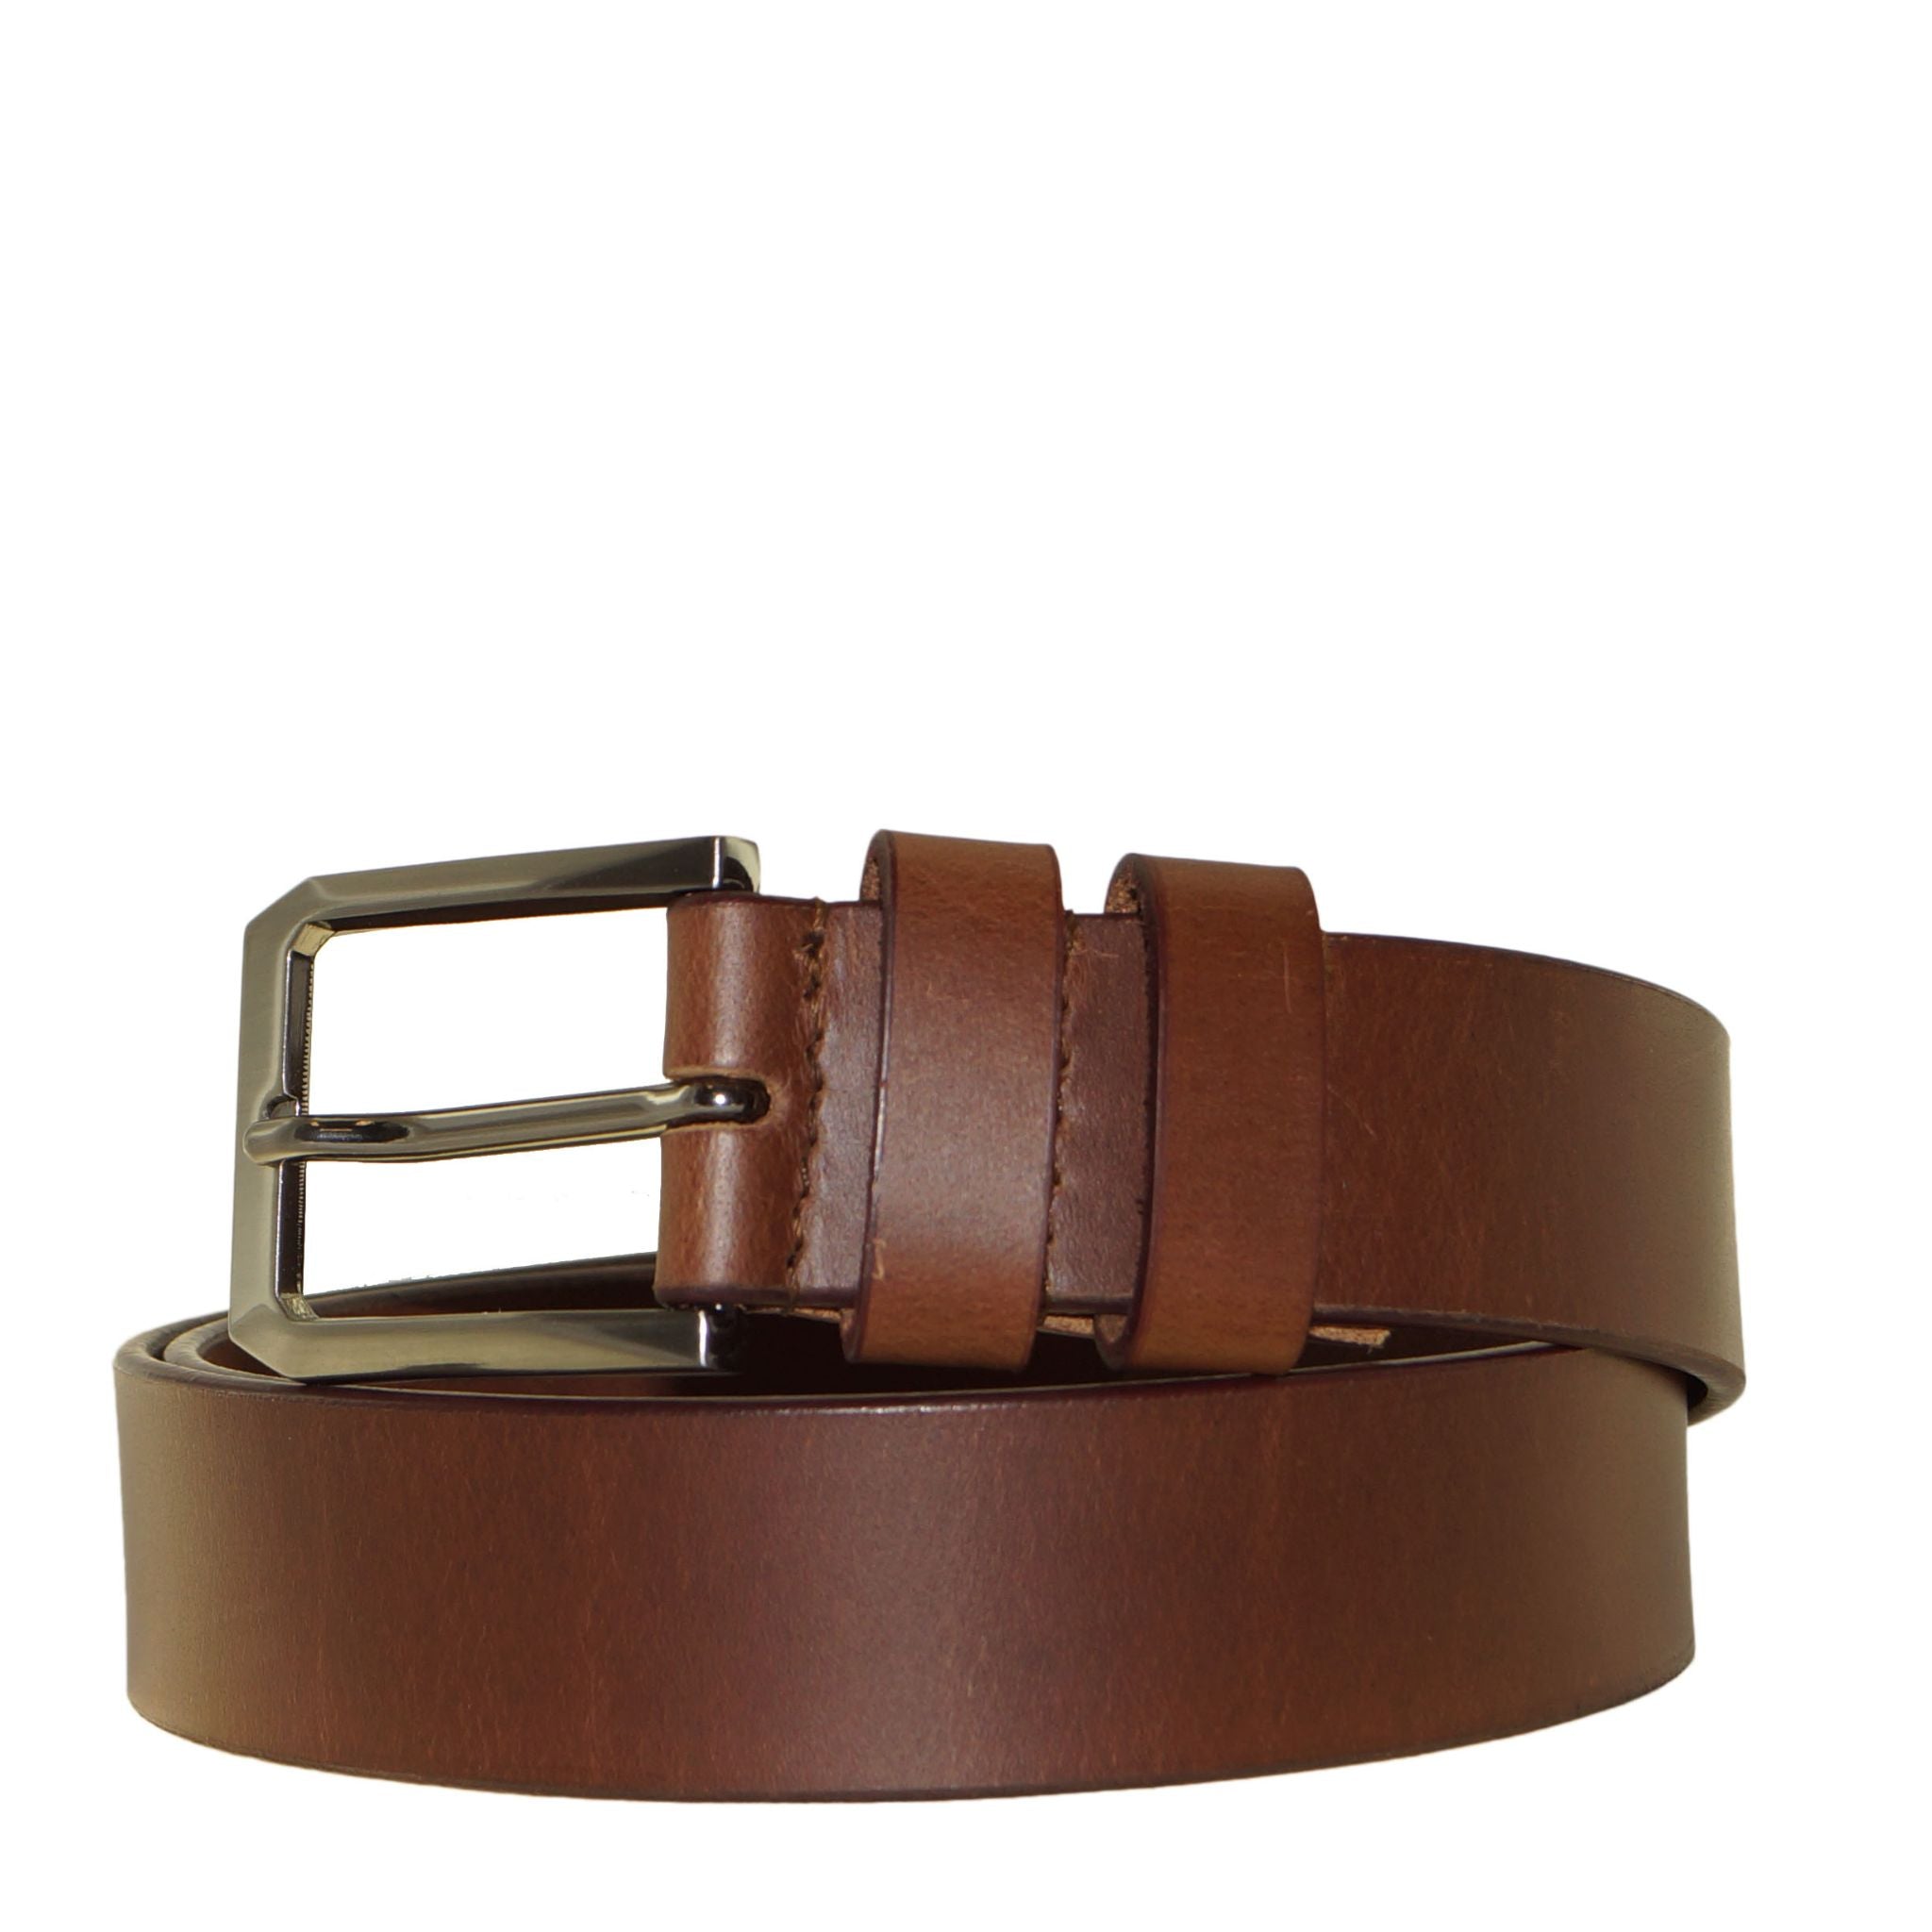 Tan Double Loop Leather Belt 38mm width. Size 40"